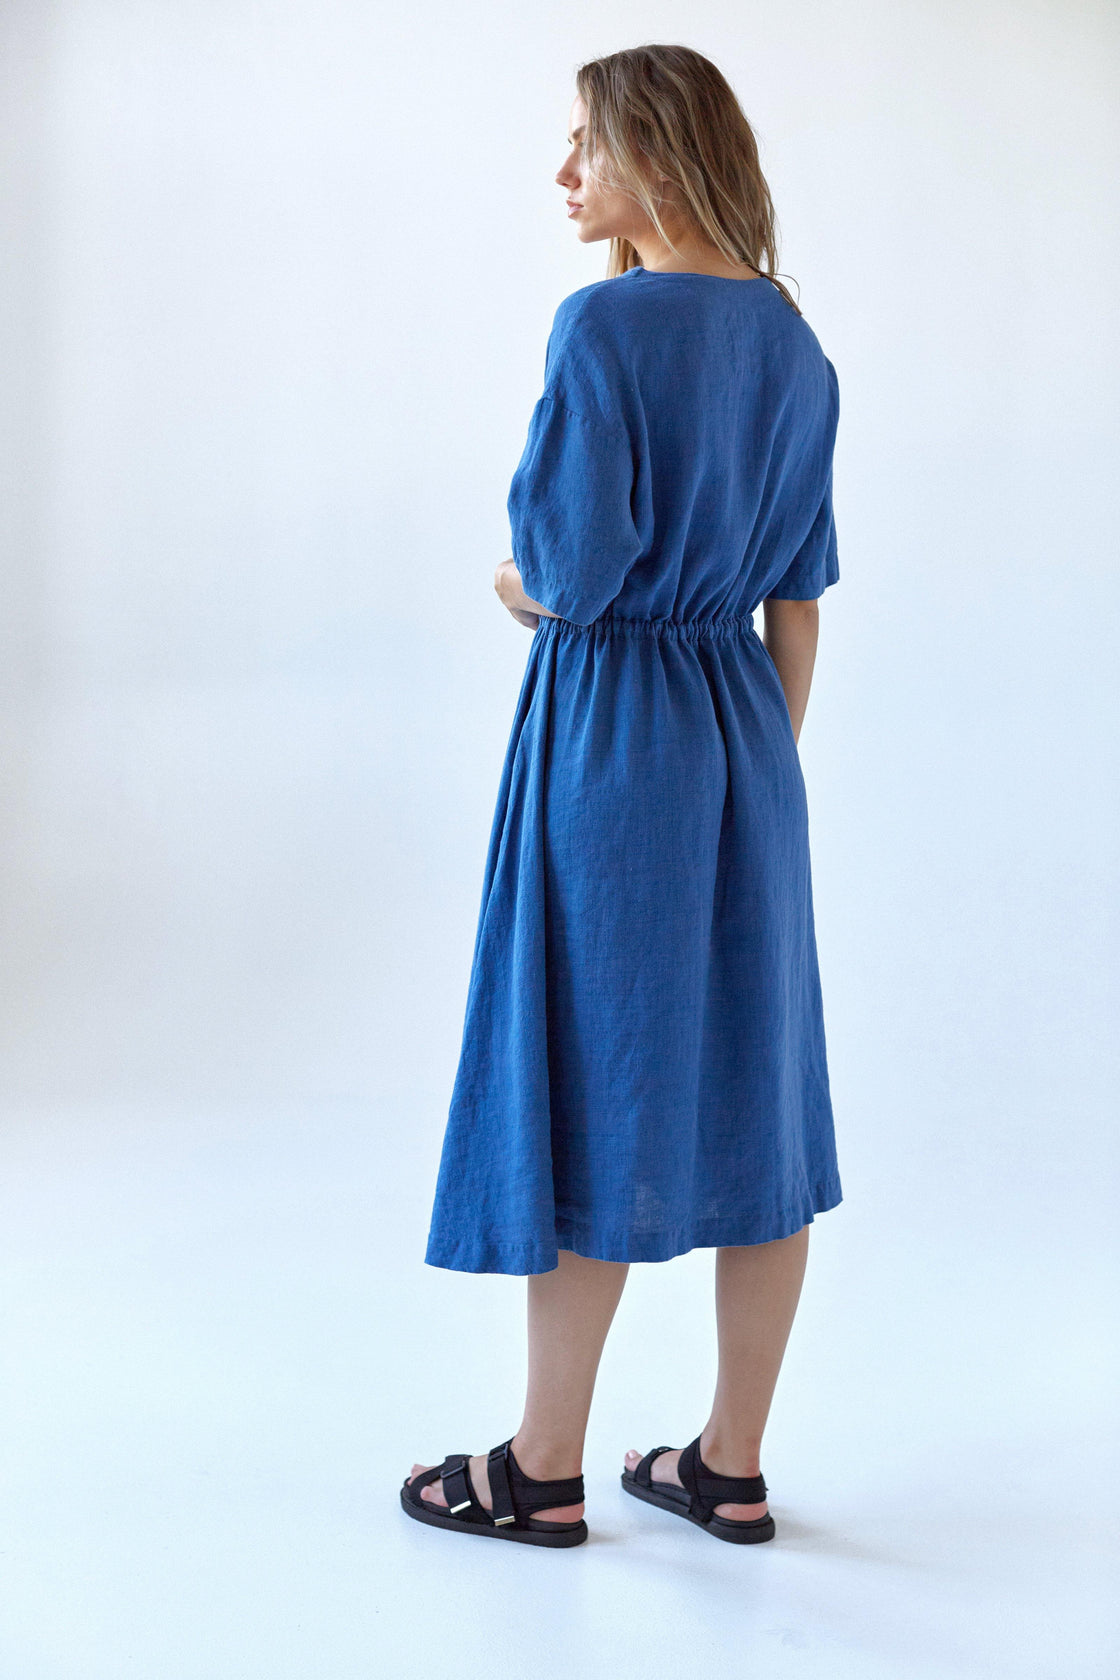 Organic Blue Linen dress - Manufacture de Lin